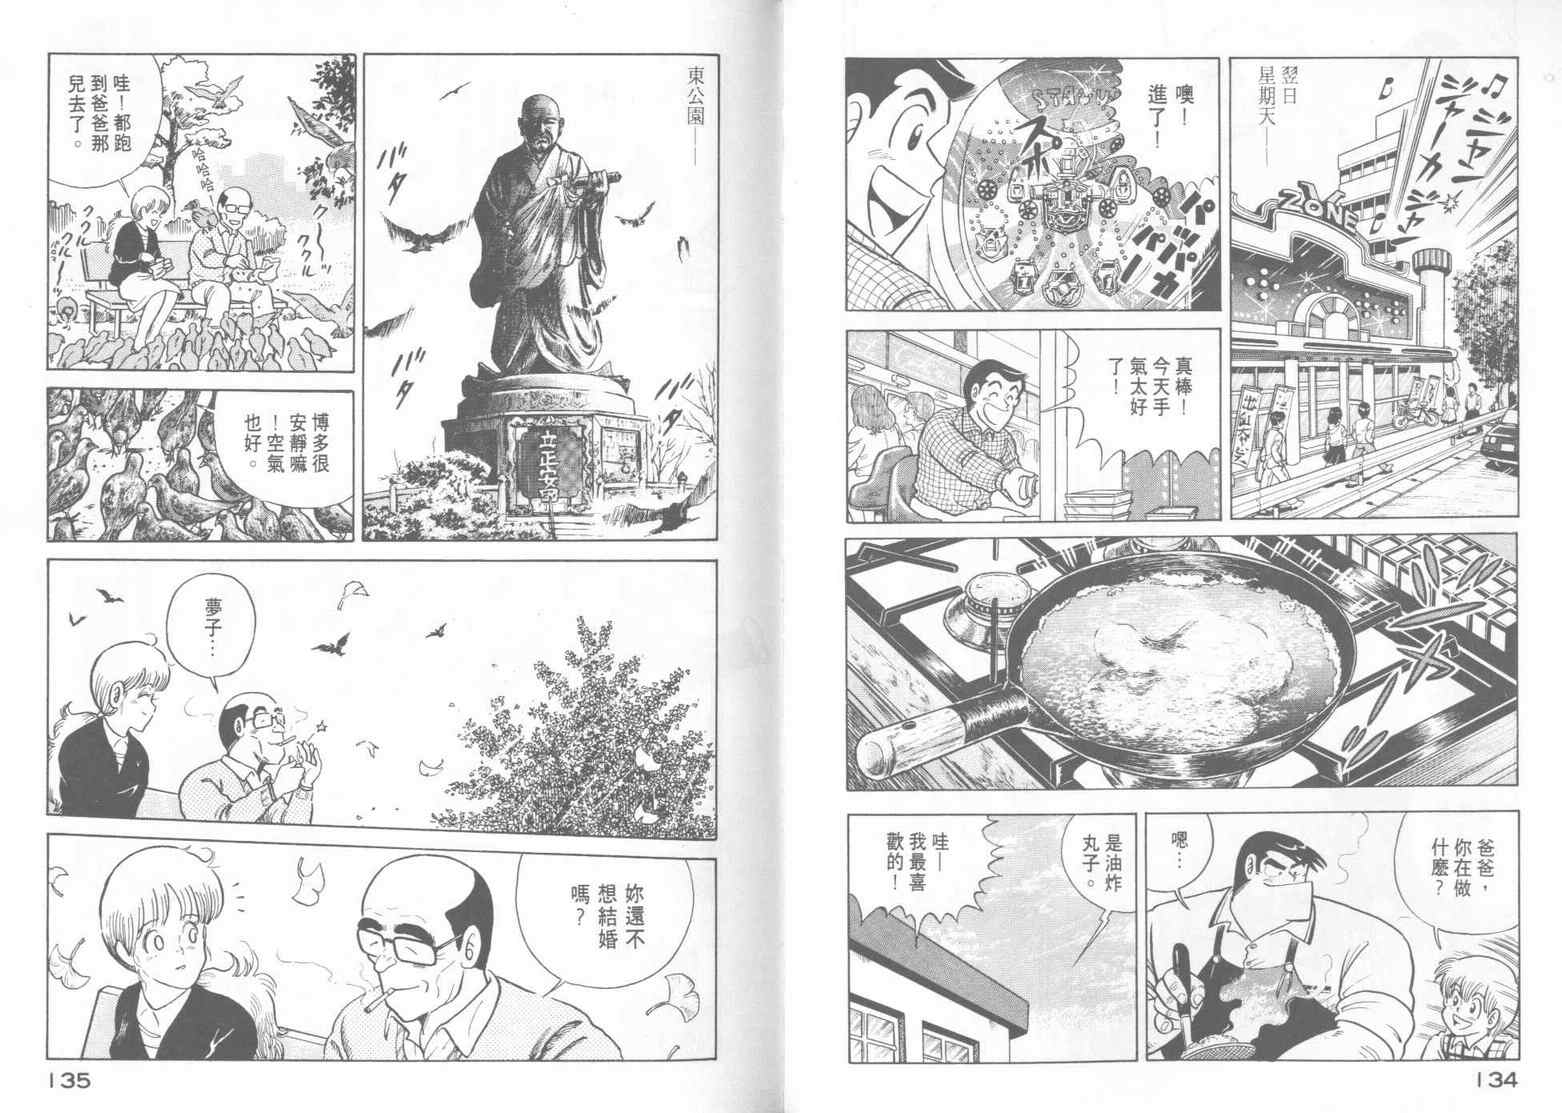 妙廚老爹 Cooking Papa クッキングパパ 漫畫15卷 第69頁 妙廚老爹15卷劇情 看漫畫